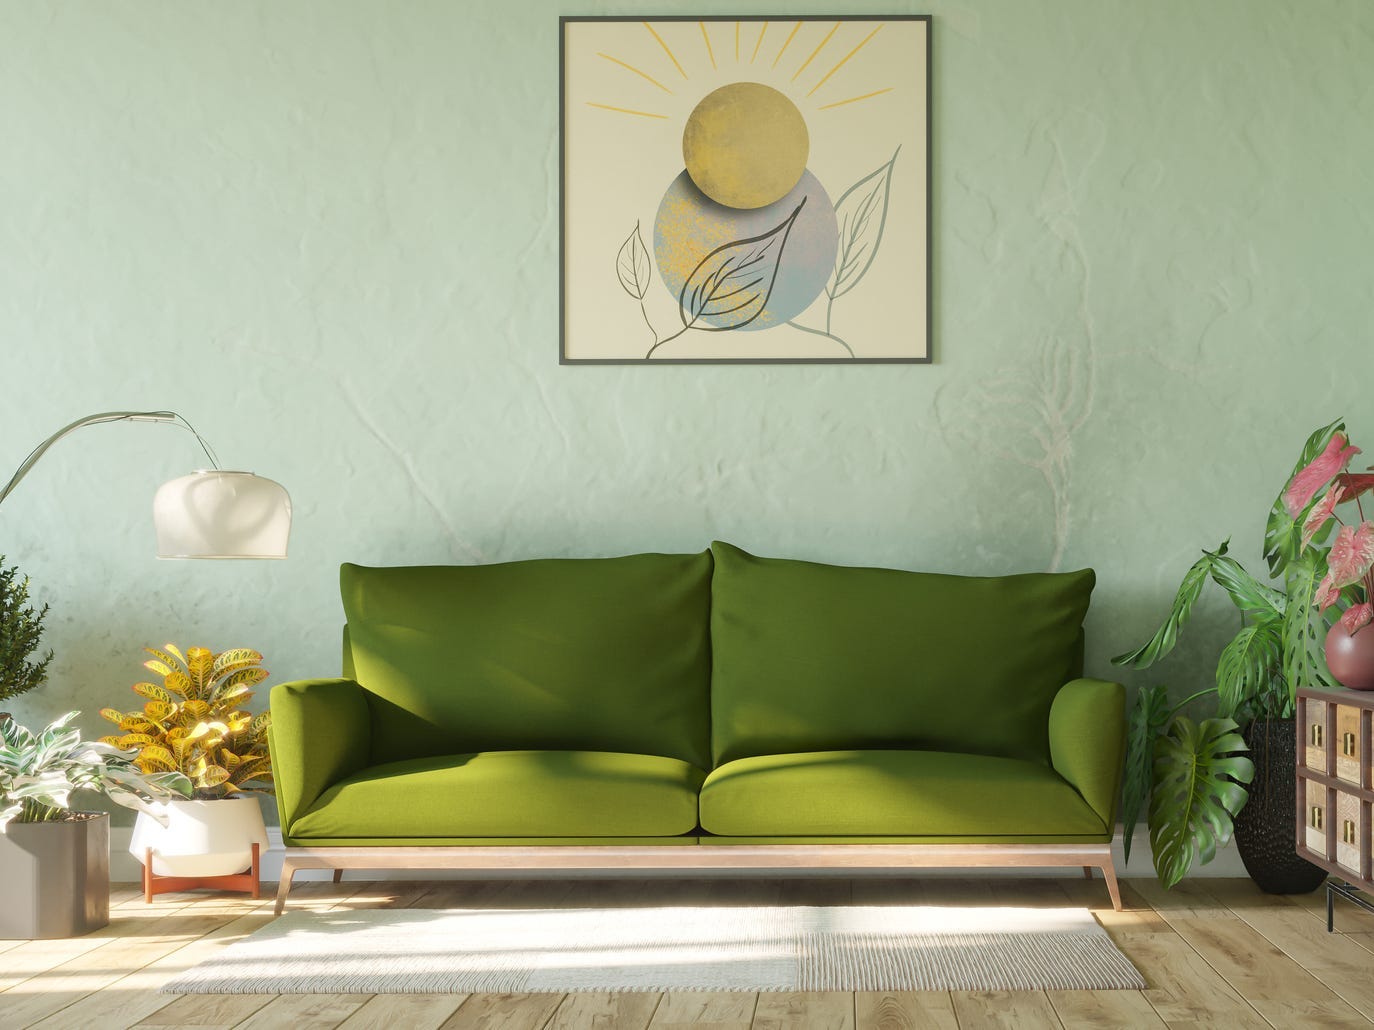 Olivgrüne Couch umgeben von Pflanzen vor mintgrüner Wand.  Über der Couch hängt ein abstrakter Kunstdruck mit einer Sonne darin